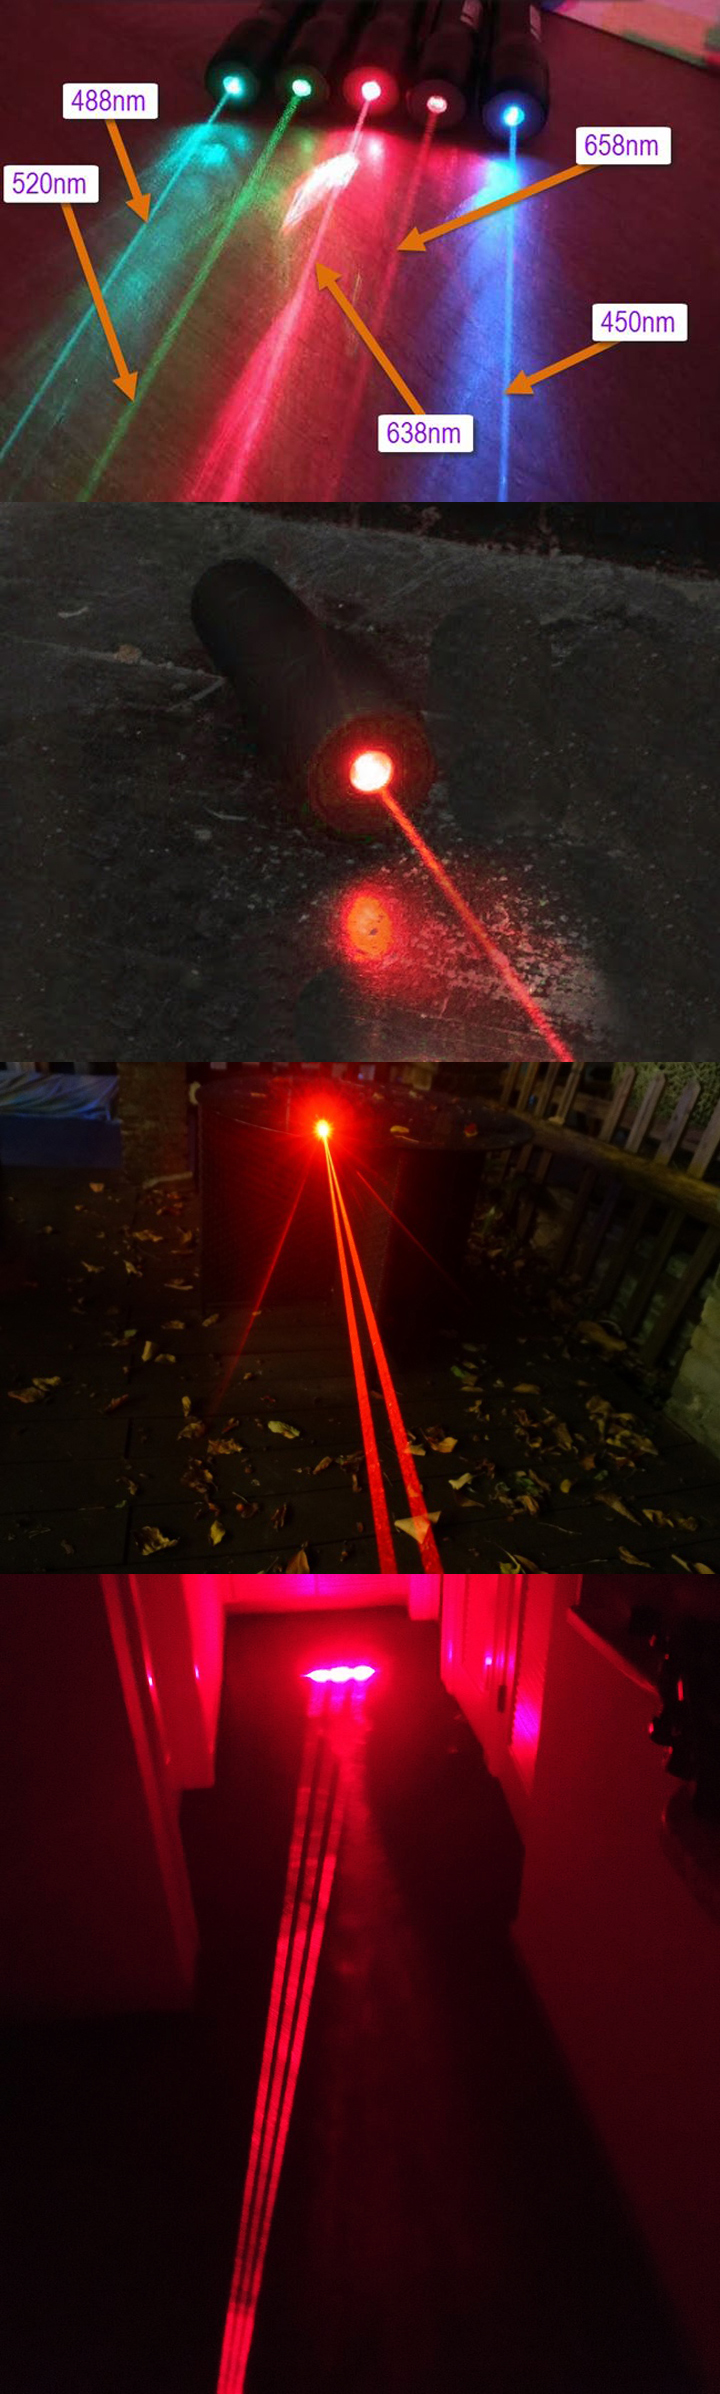 638nm rode laser